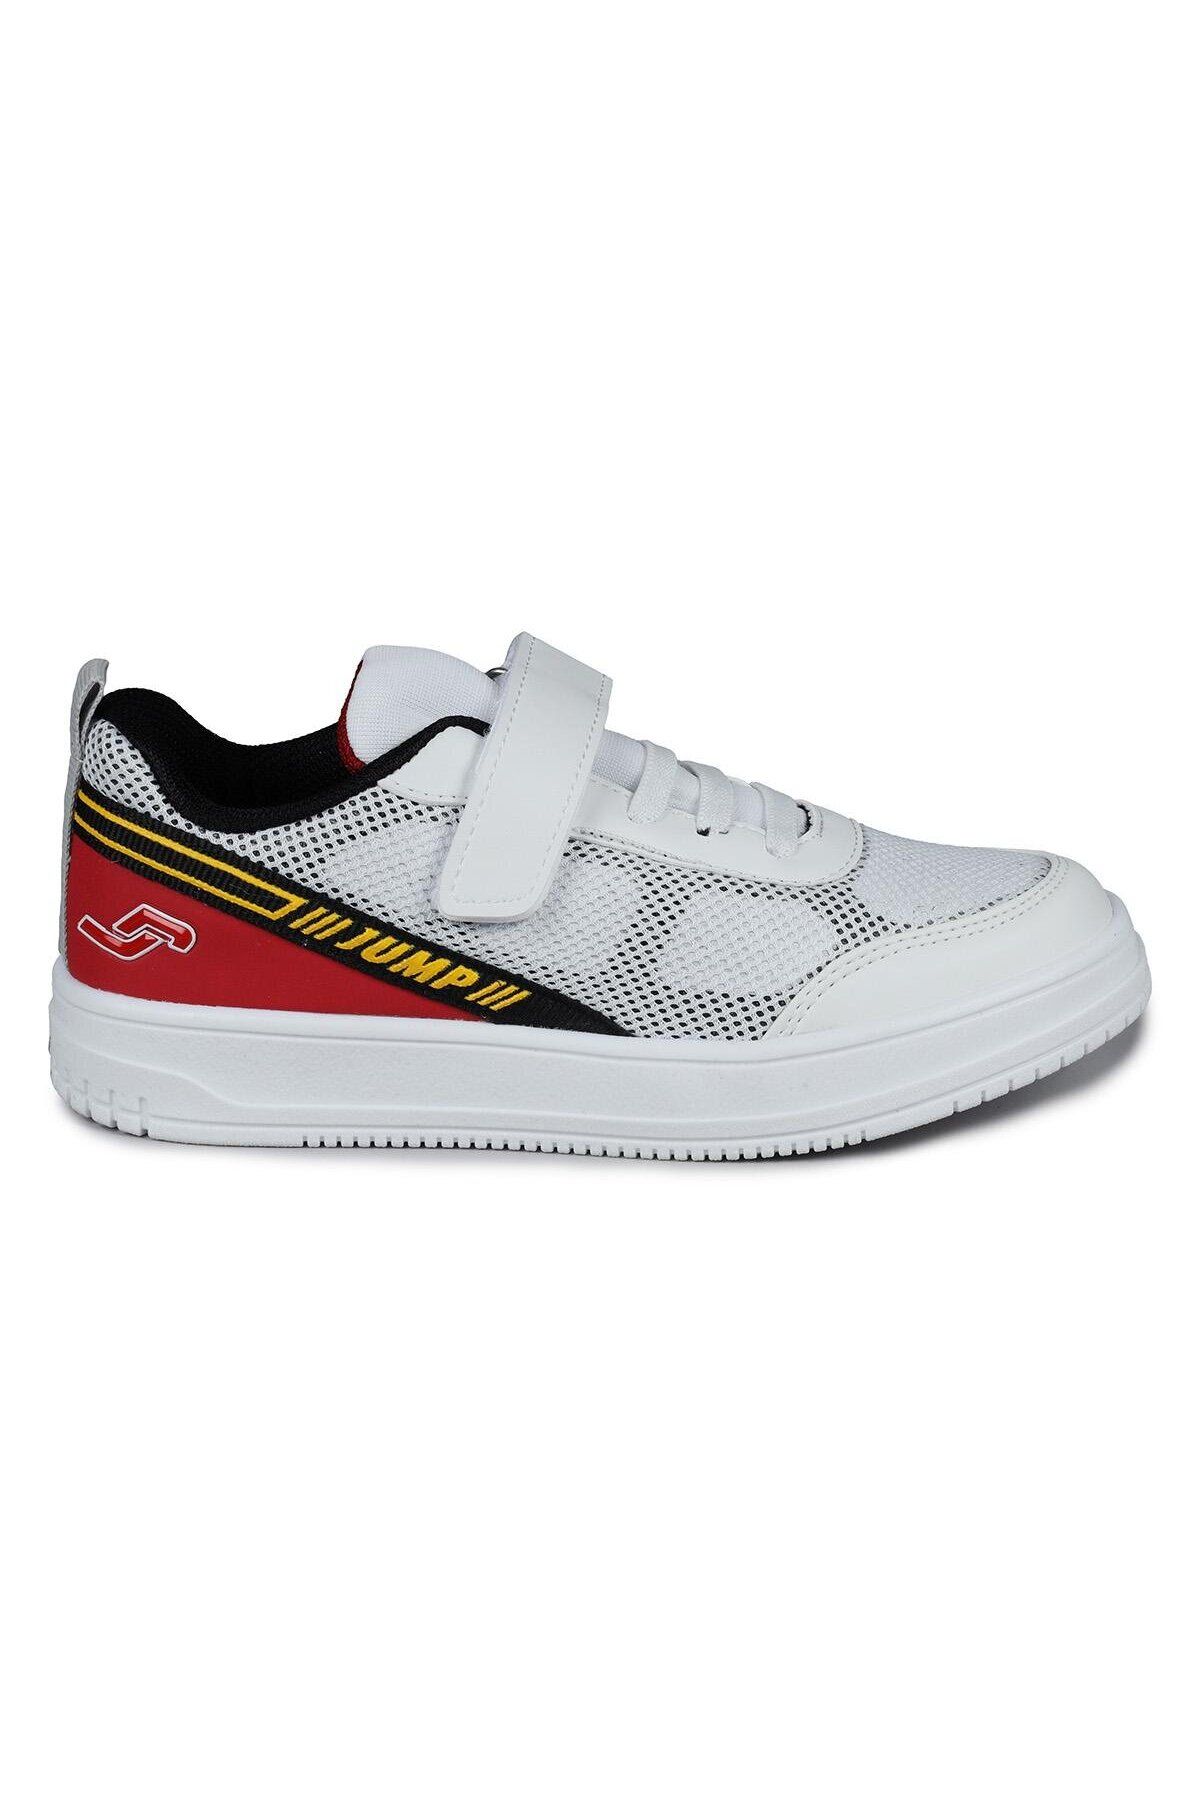 Jump 28128 Unisex Çocuk Beyaz - Kırmızı Çırtlı Ortopedik Hafif Yürüyüş Spor Ayakkabı